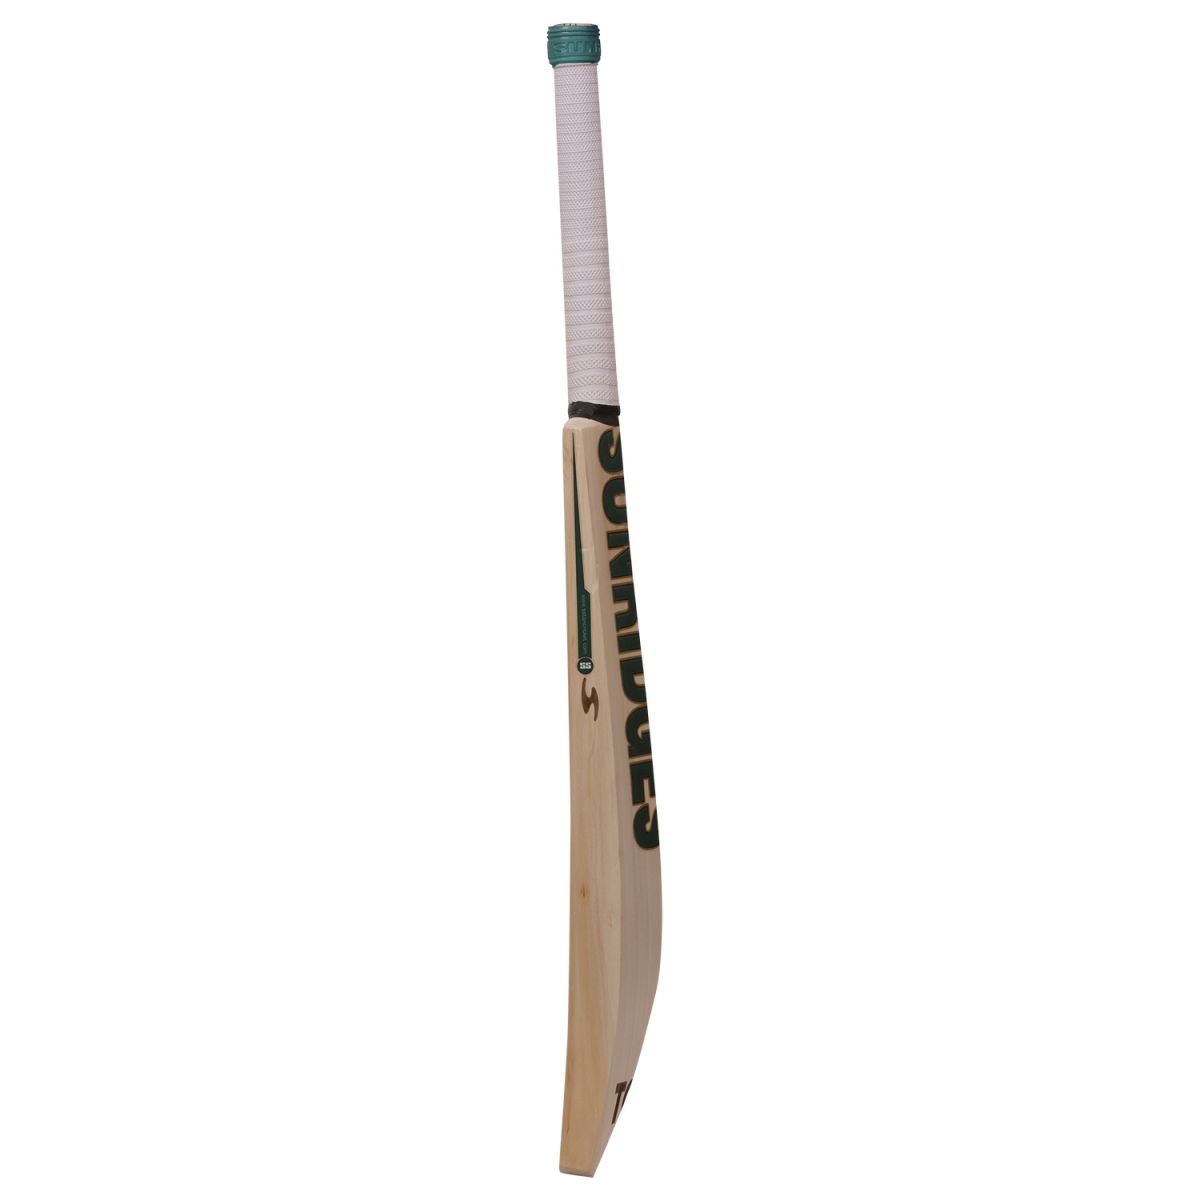 SS Cricket Bat Ton Retro Power Plus